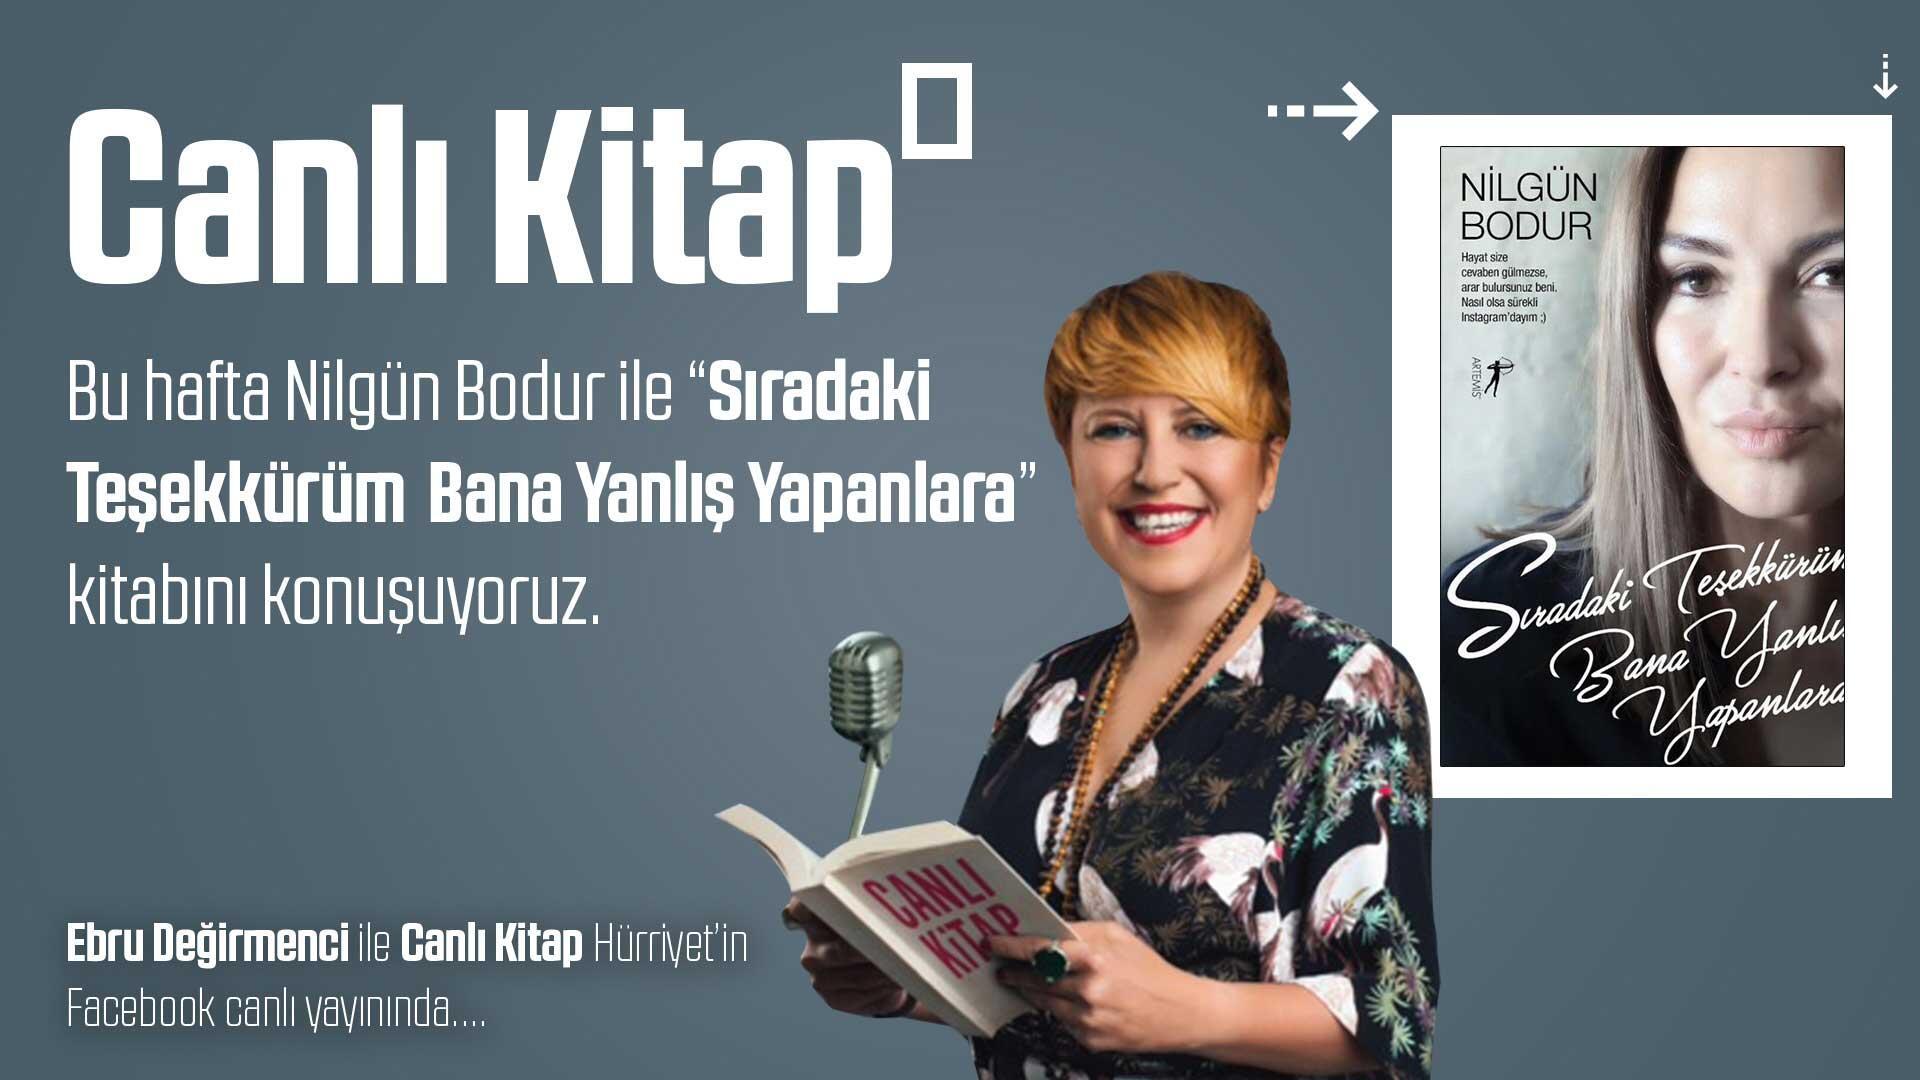 Nilgun Bodur Kitaplari 2 Kitap Birarada Sen Gittin Ya Ben Cok Guzellestim Kitabi Bu Sette Nilgun Bodur Turk Kitabevi